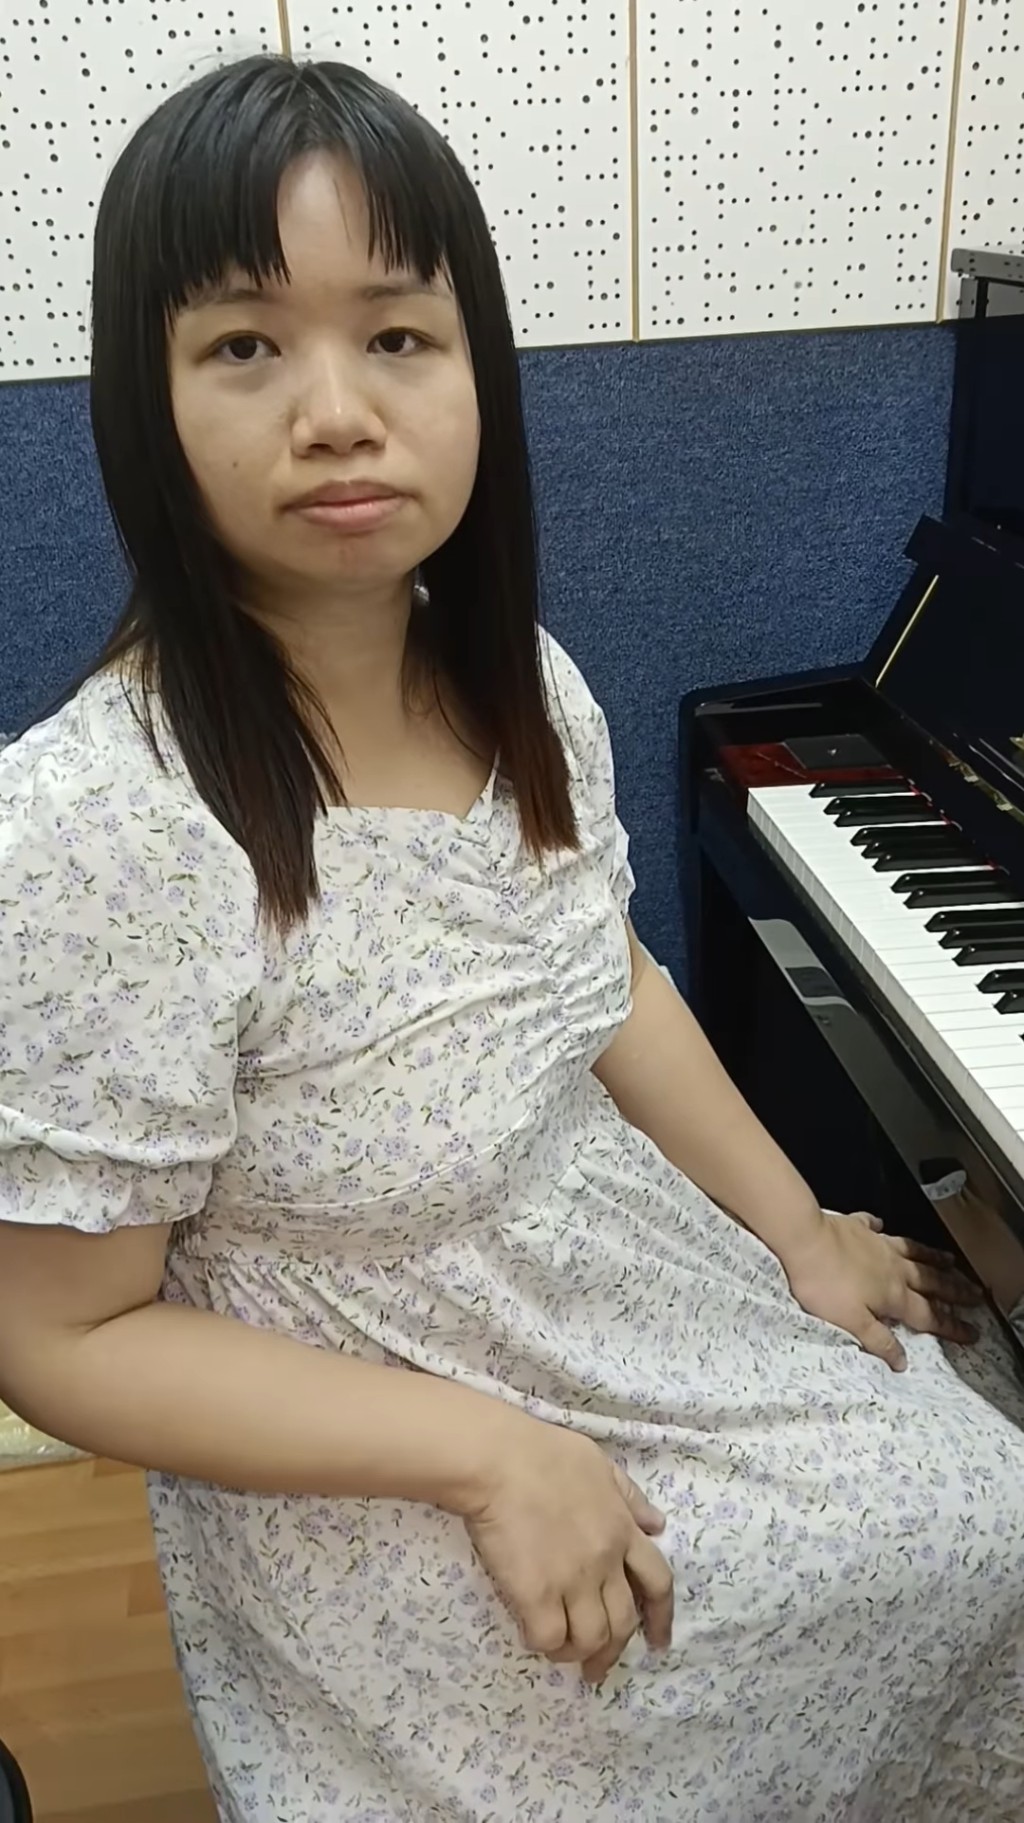 失业期间阿仪去学琴。